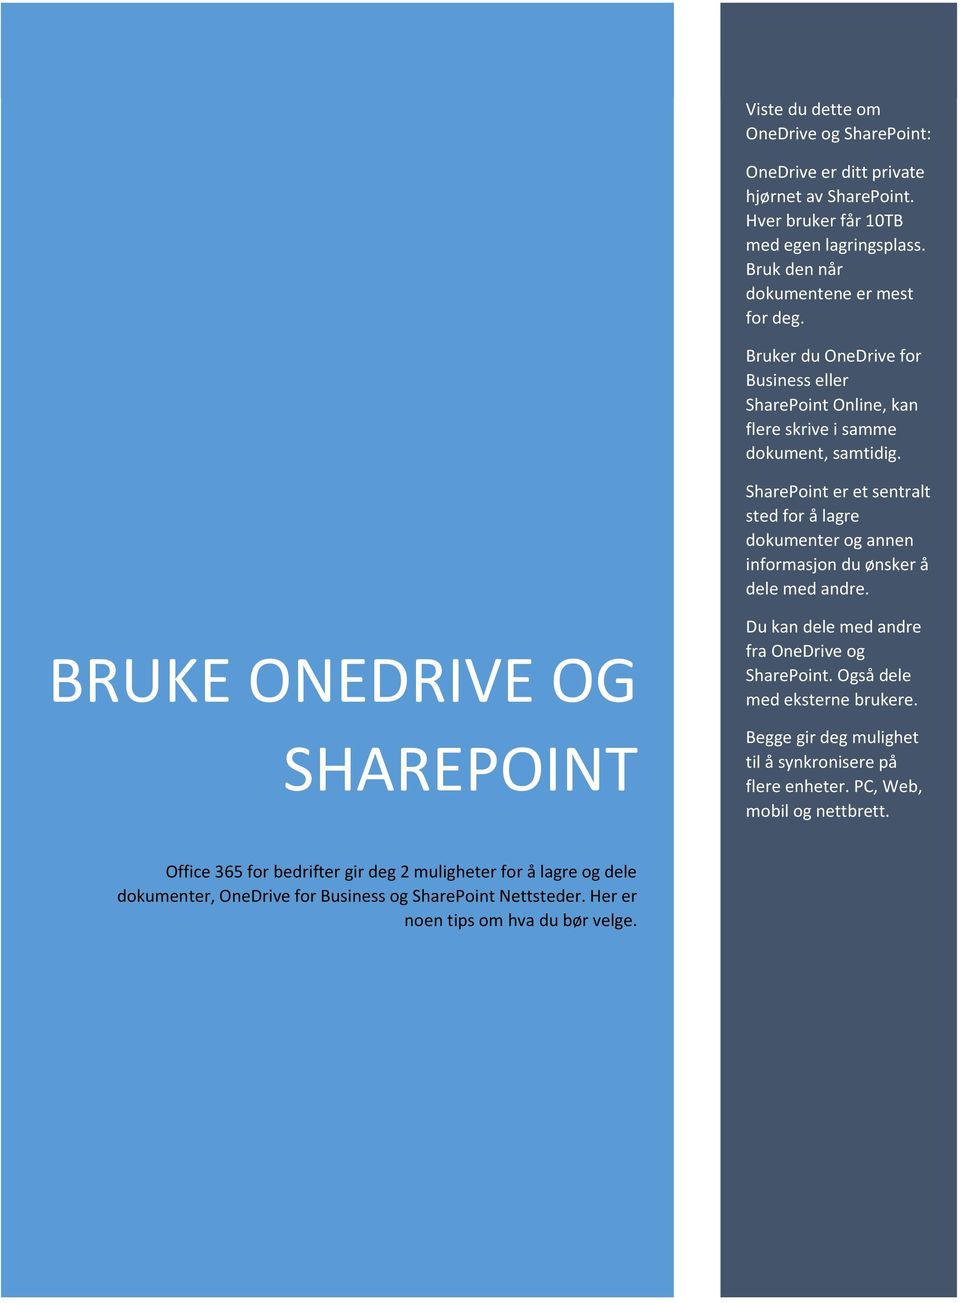 SharePoint er et sentralt sted for å lagre dokumenter og annen informasjon du ønsker å dele med andre. BRUKE ONEDRIVE OG SHAREPOINT Du kan dele med andre fra OneDrive og SharePoint.